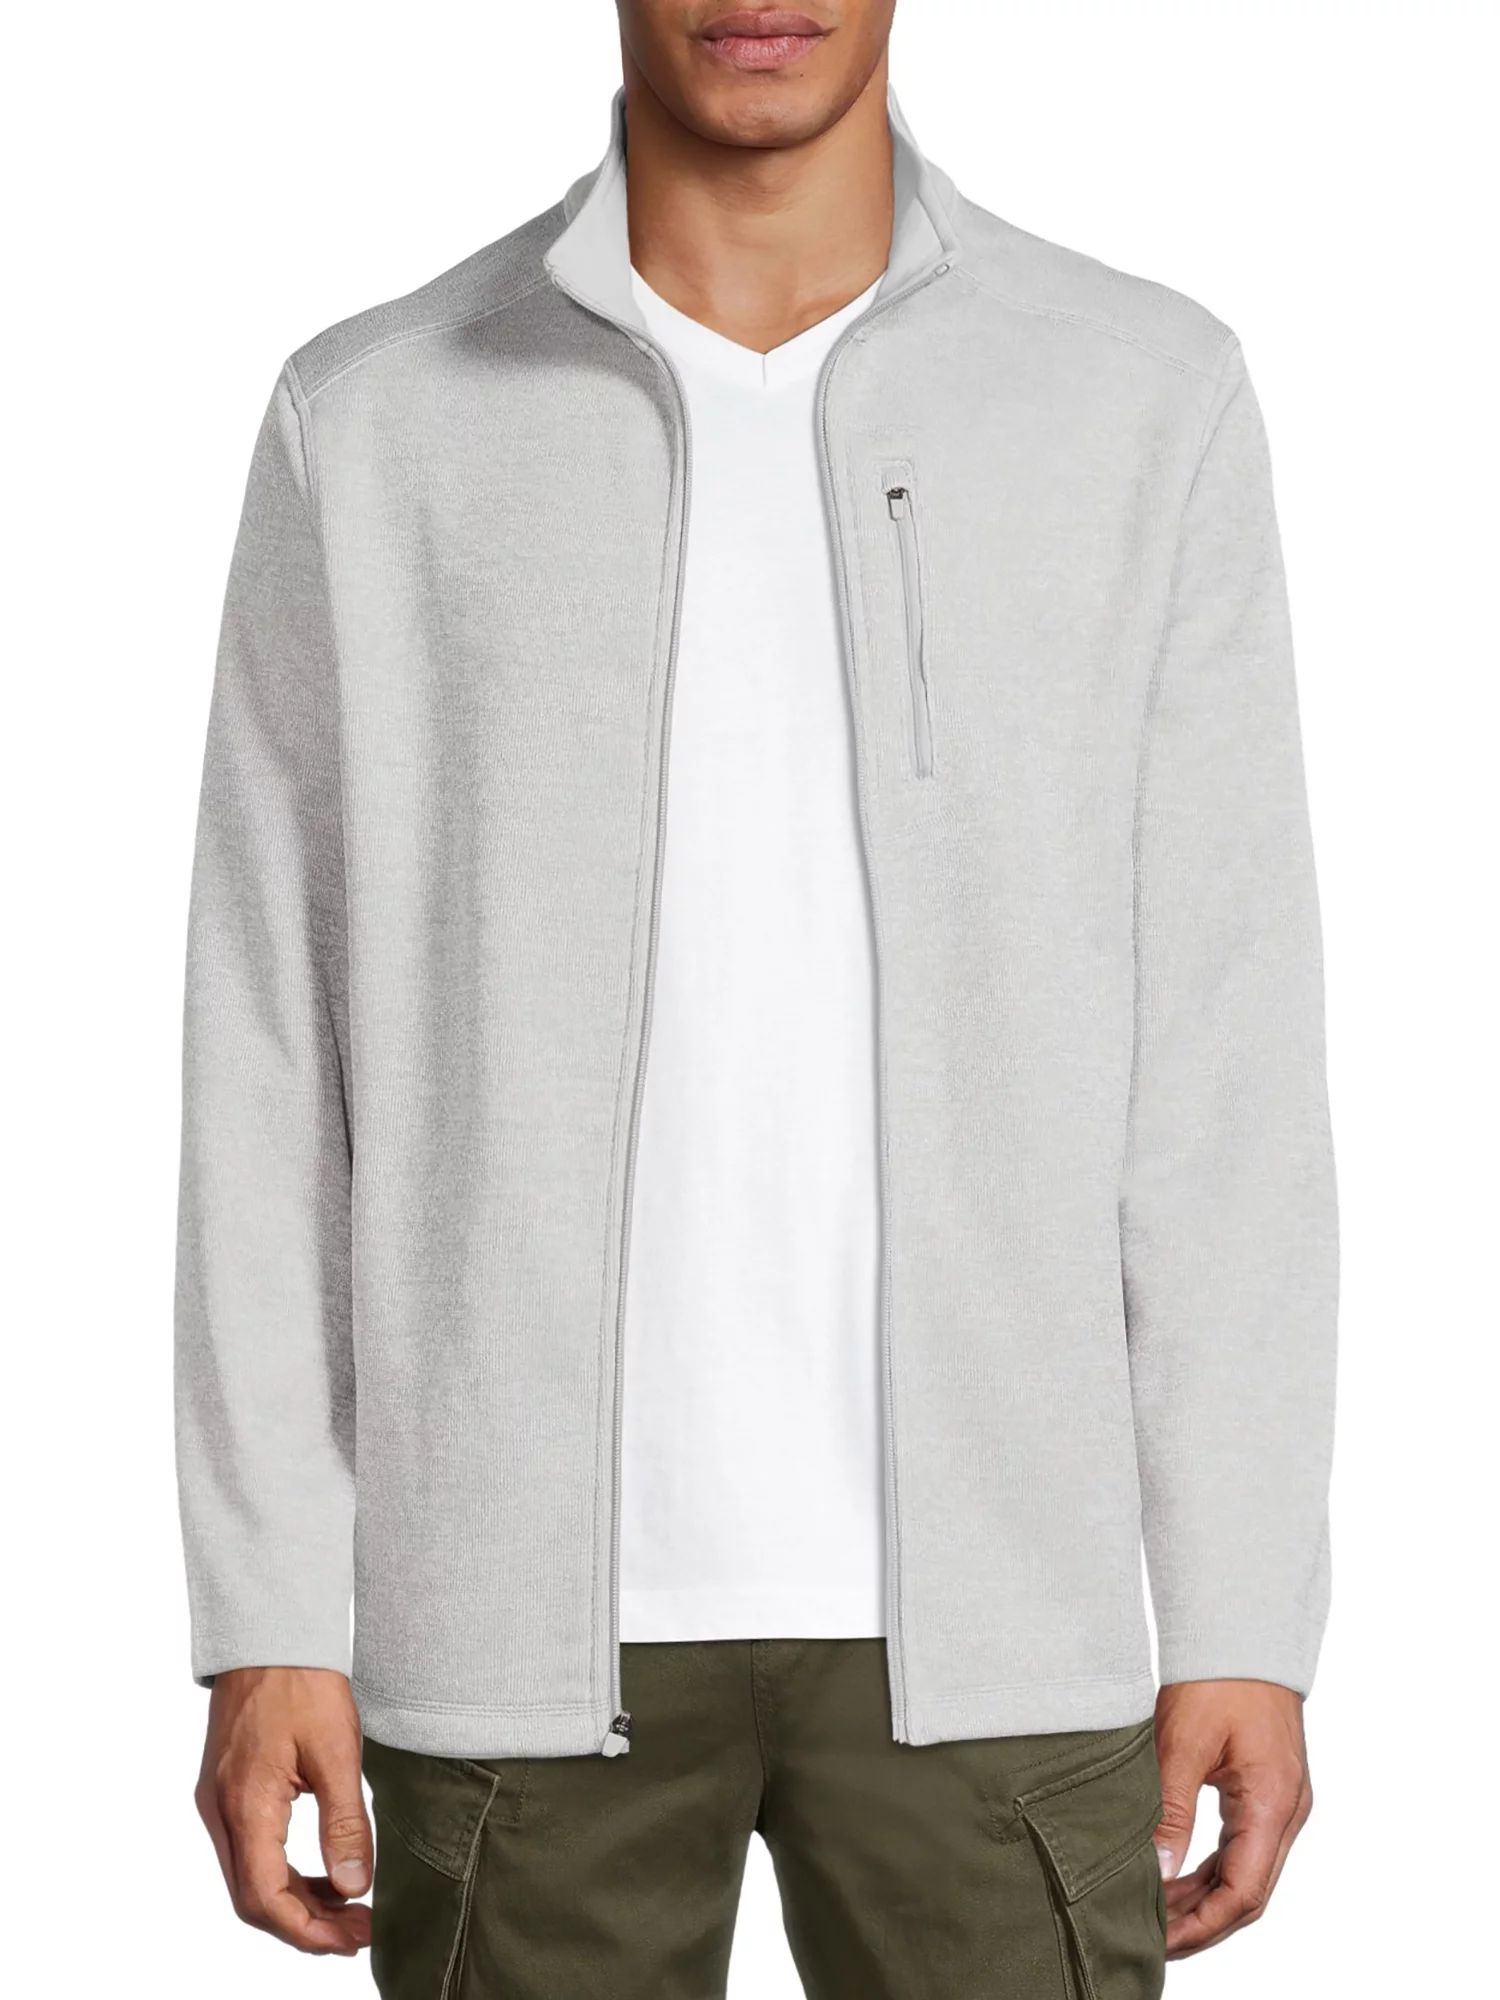 George Men and Big Men's Full Zip Fleece Sweater Jacket, up to Size 5xl | Walmart (US)